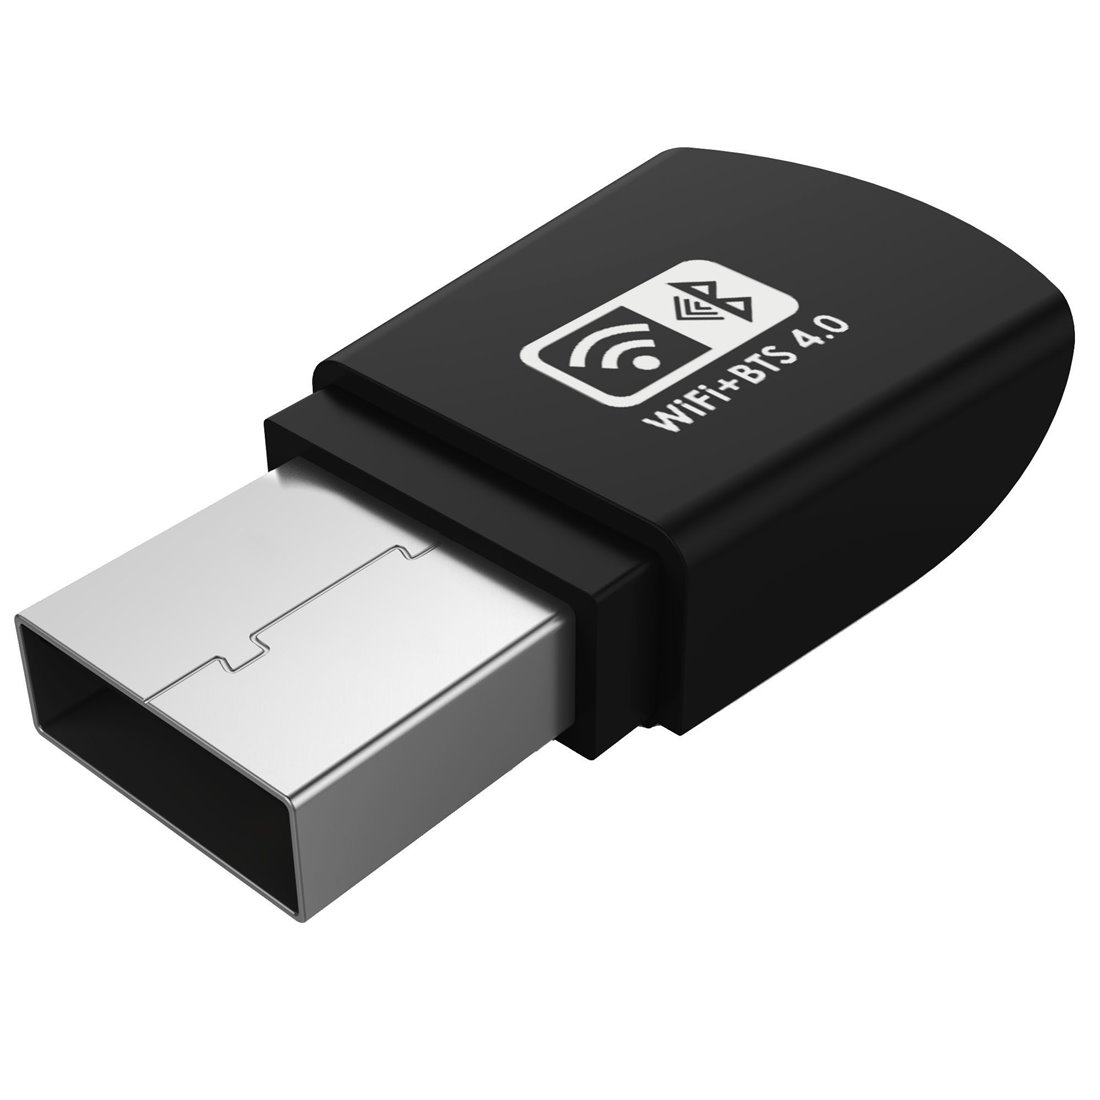 Aukey WF-R4 Adaptateur Wifi et Bluetooth 2 en 1 Wifi USB sans Fil pour Windows 7/8/8.1/10 Noir